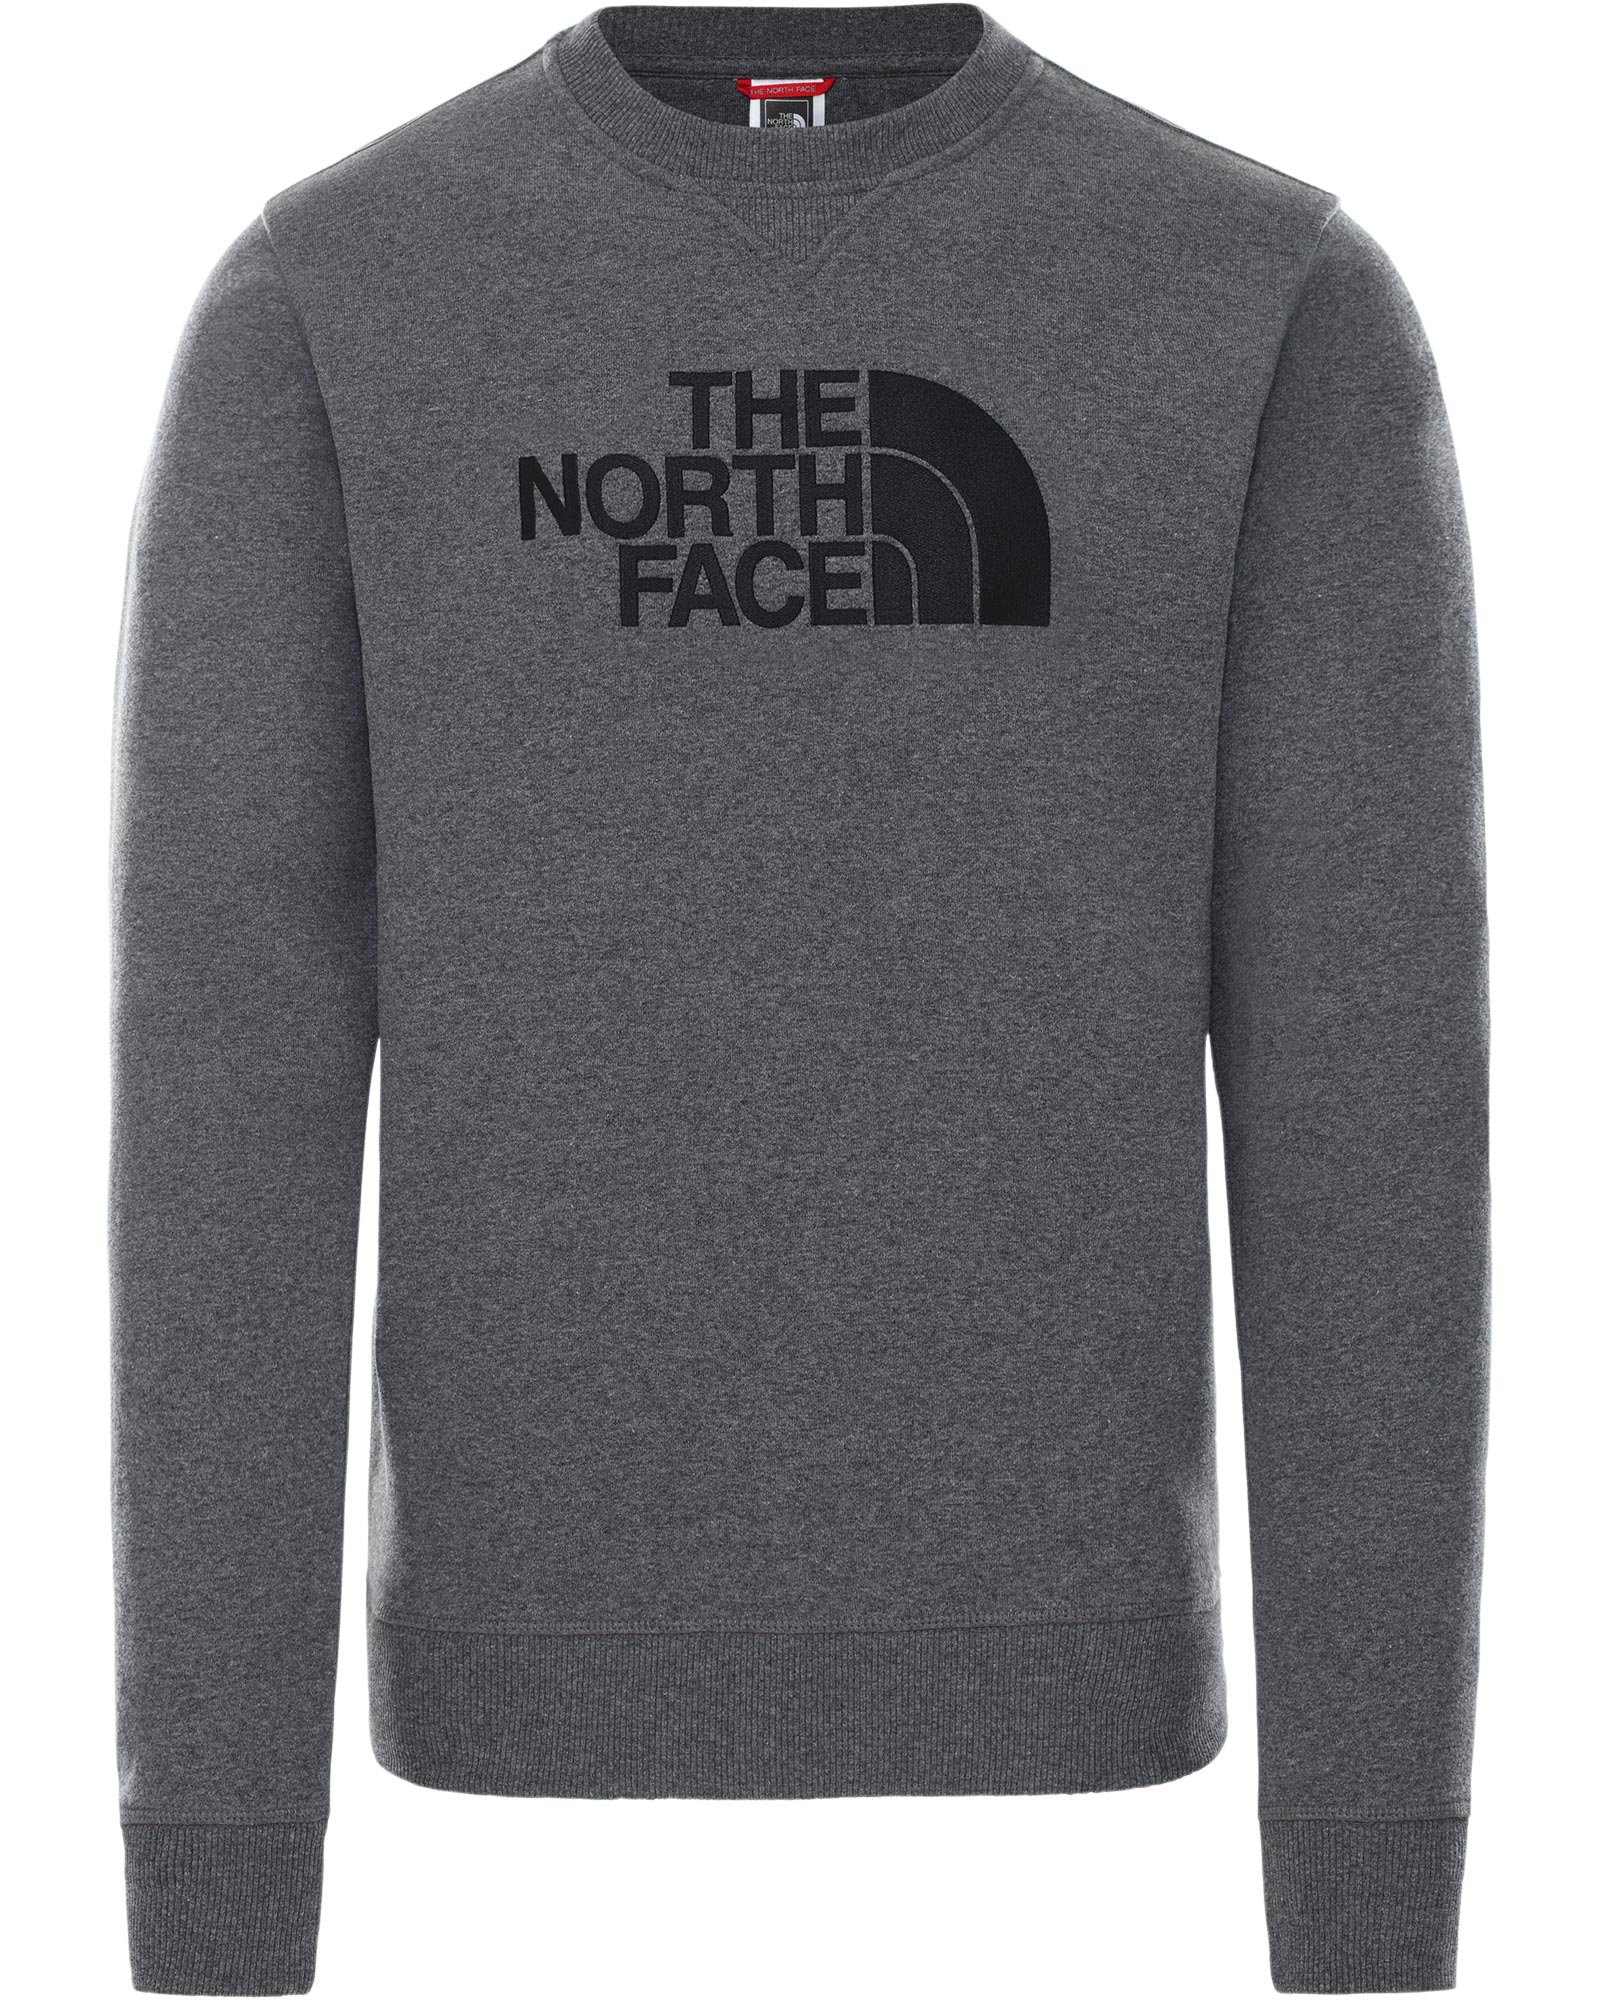 The North Face Drew Peak Men’s Crew - TNF Medium Grey Heather M